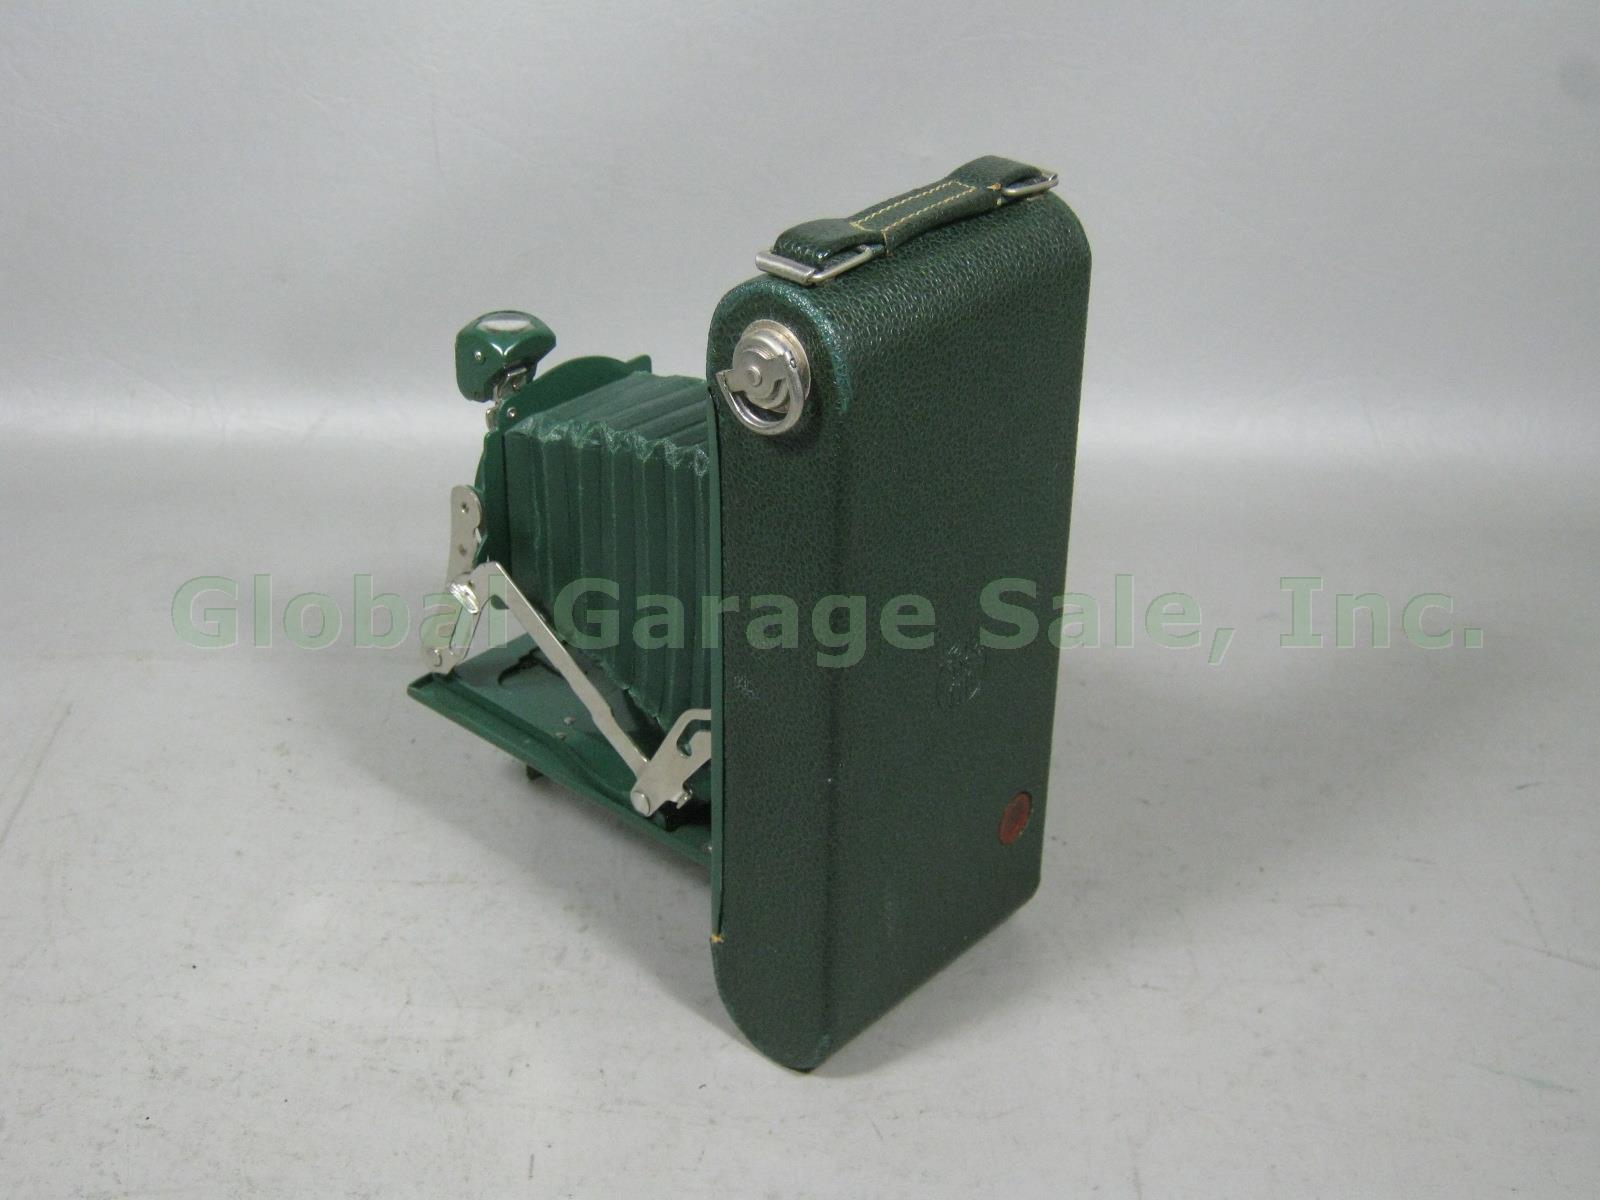 Vtg Antique Green Kodak Pocket Junior Jr 1A Folding Camera W/ Carrying Case NR!! 5